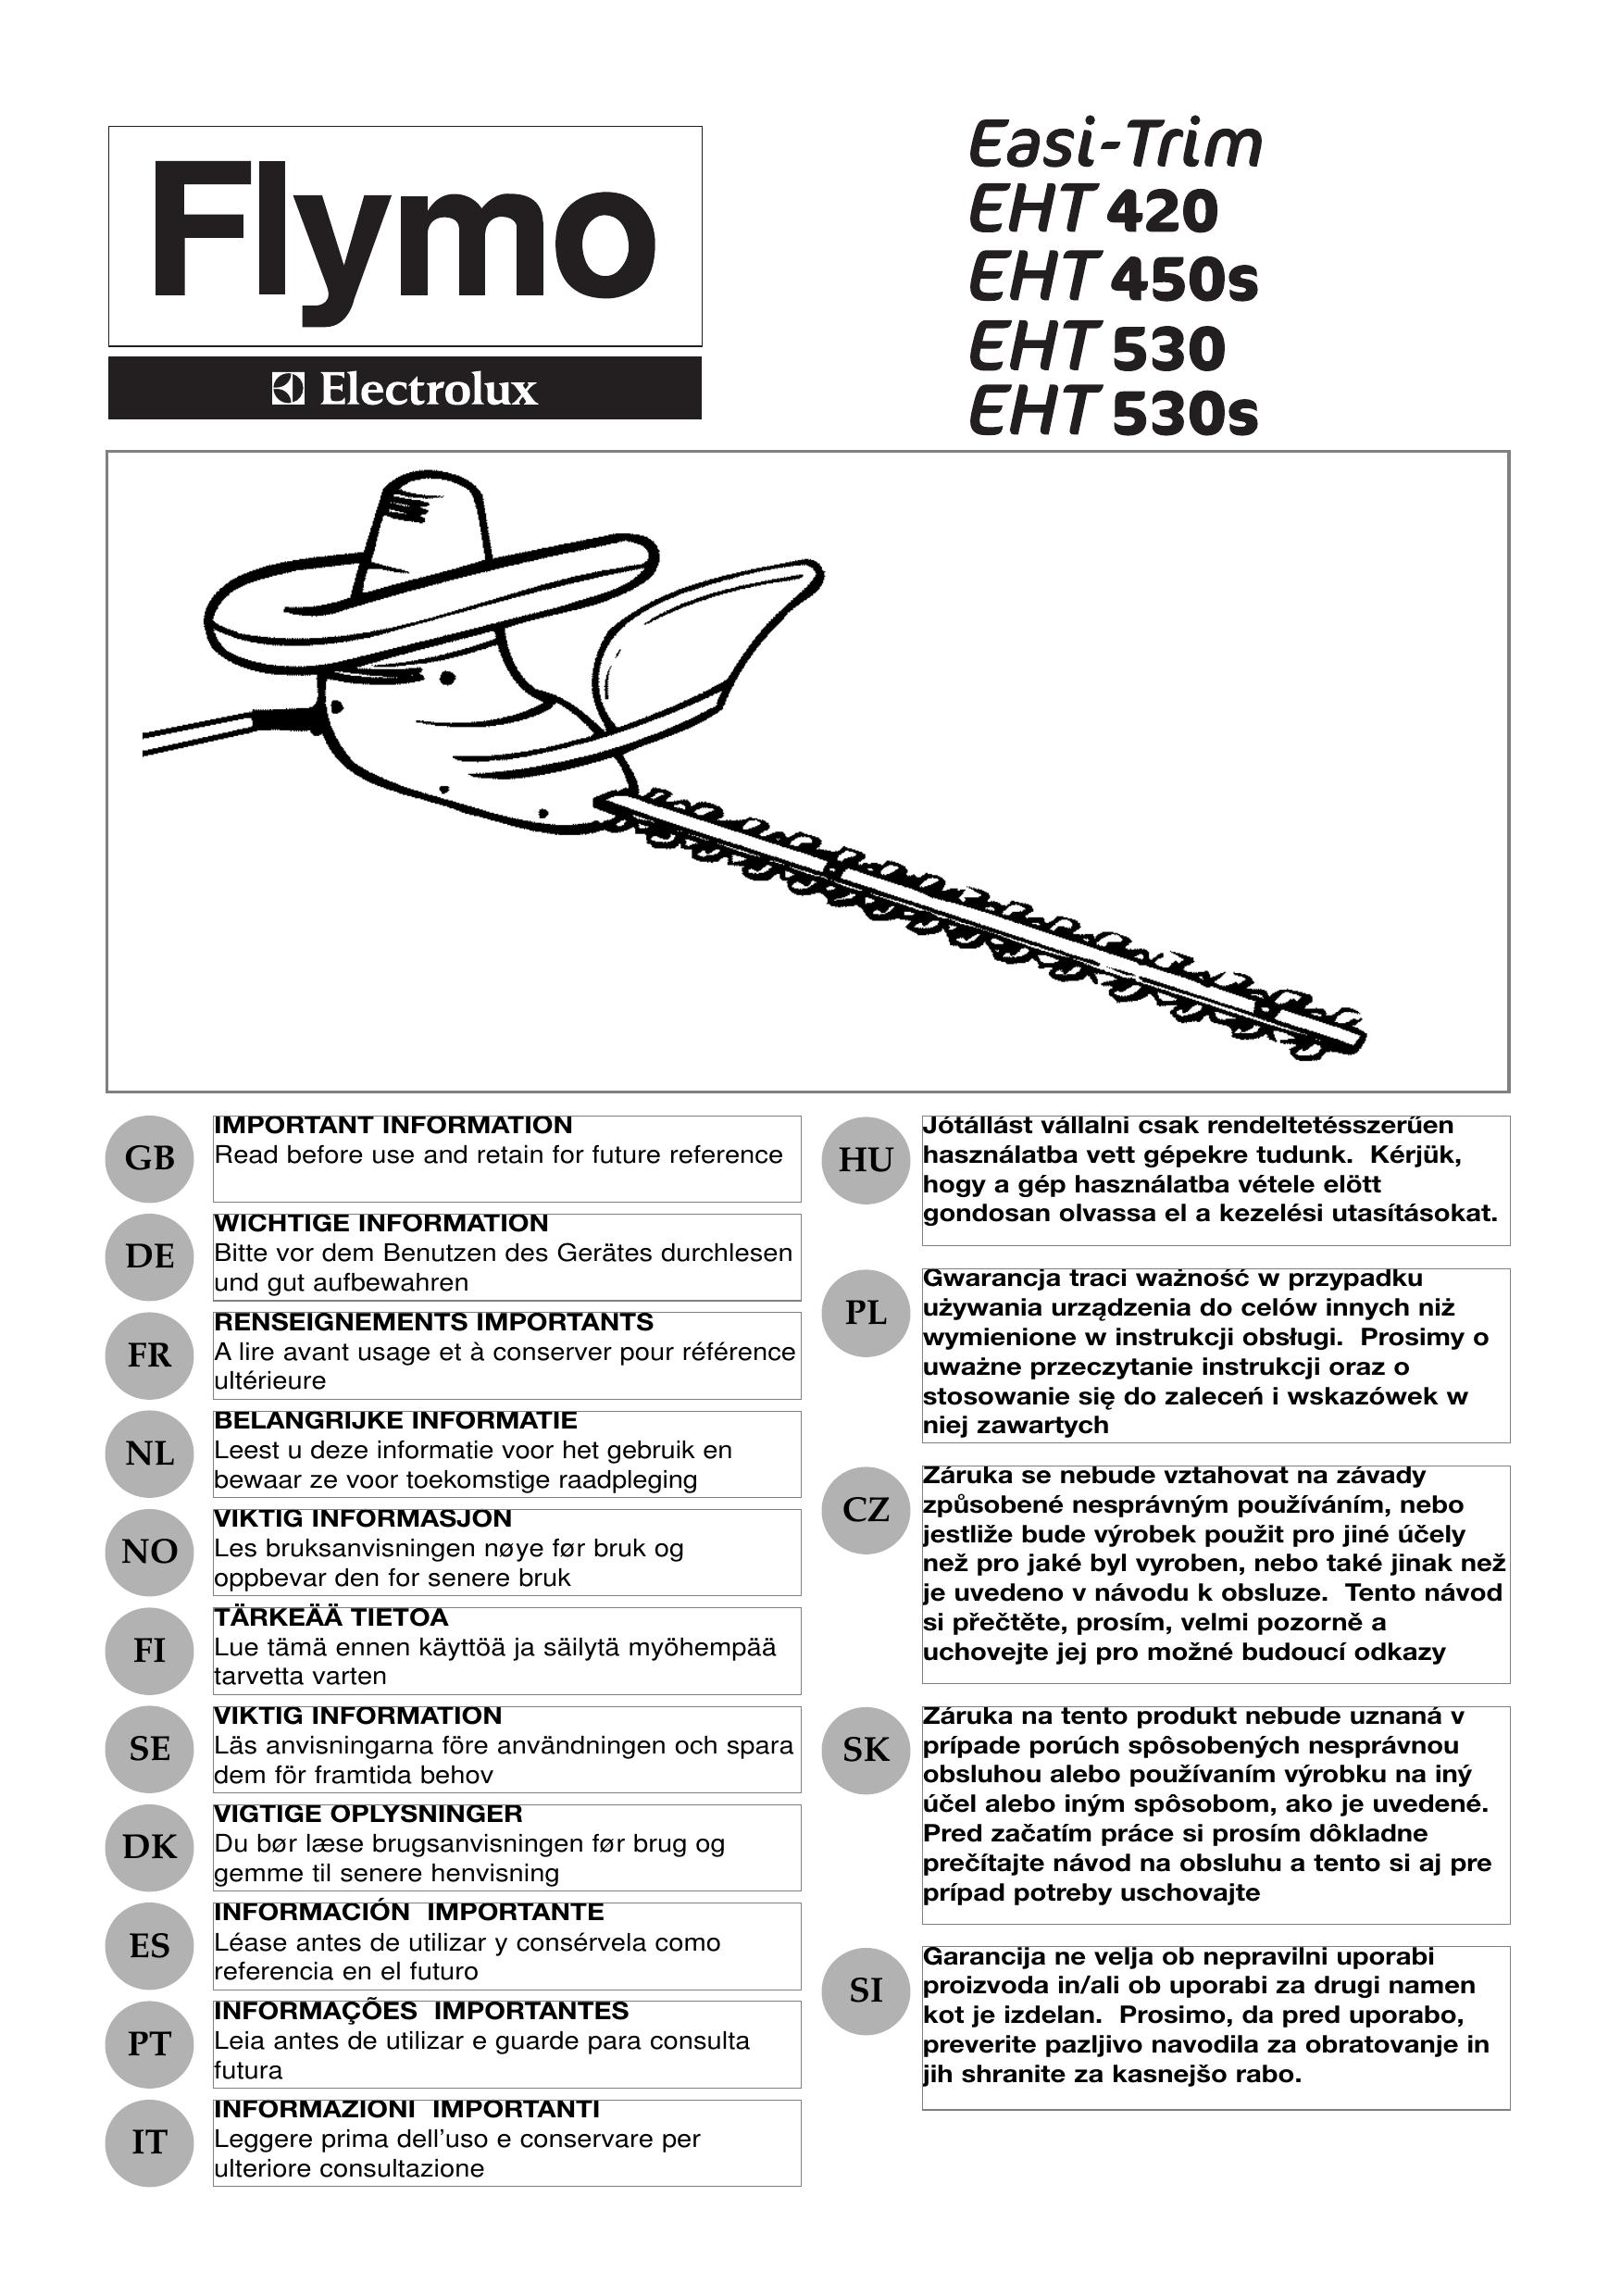 Flymo EHT 530 Trimmer User Manual